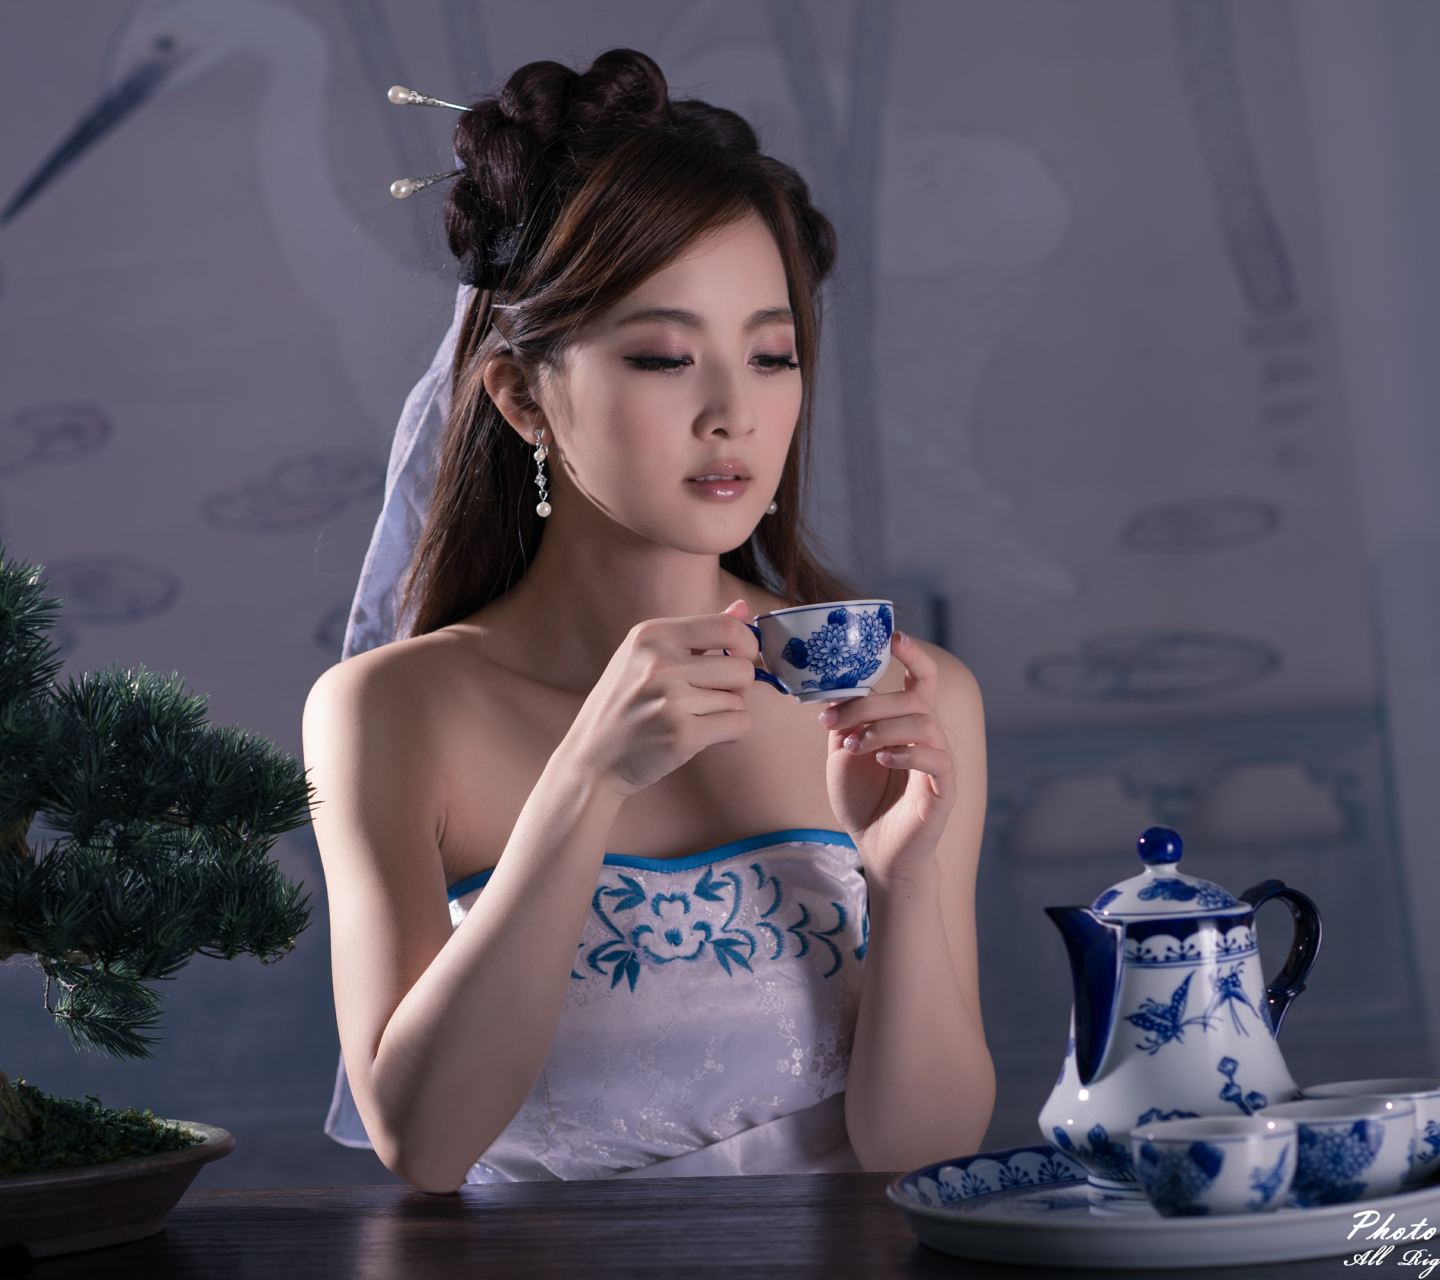 women, mikako zhang kaijie, asian, dress, cup, hair dress, tea set, hairpin, bonsai